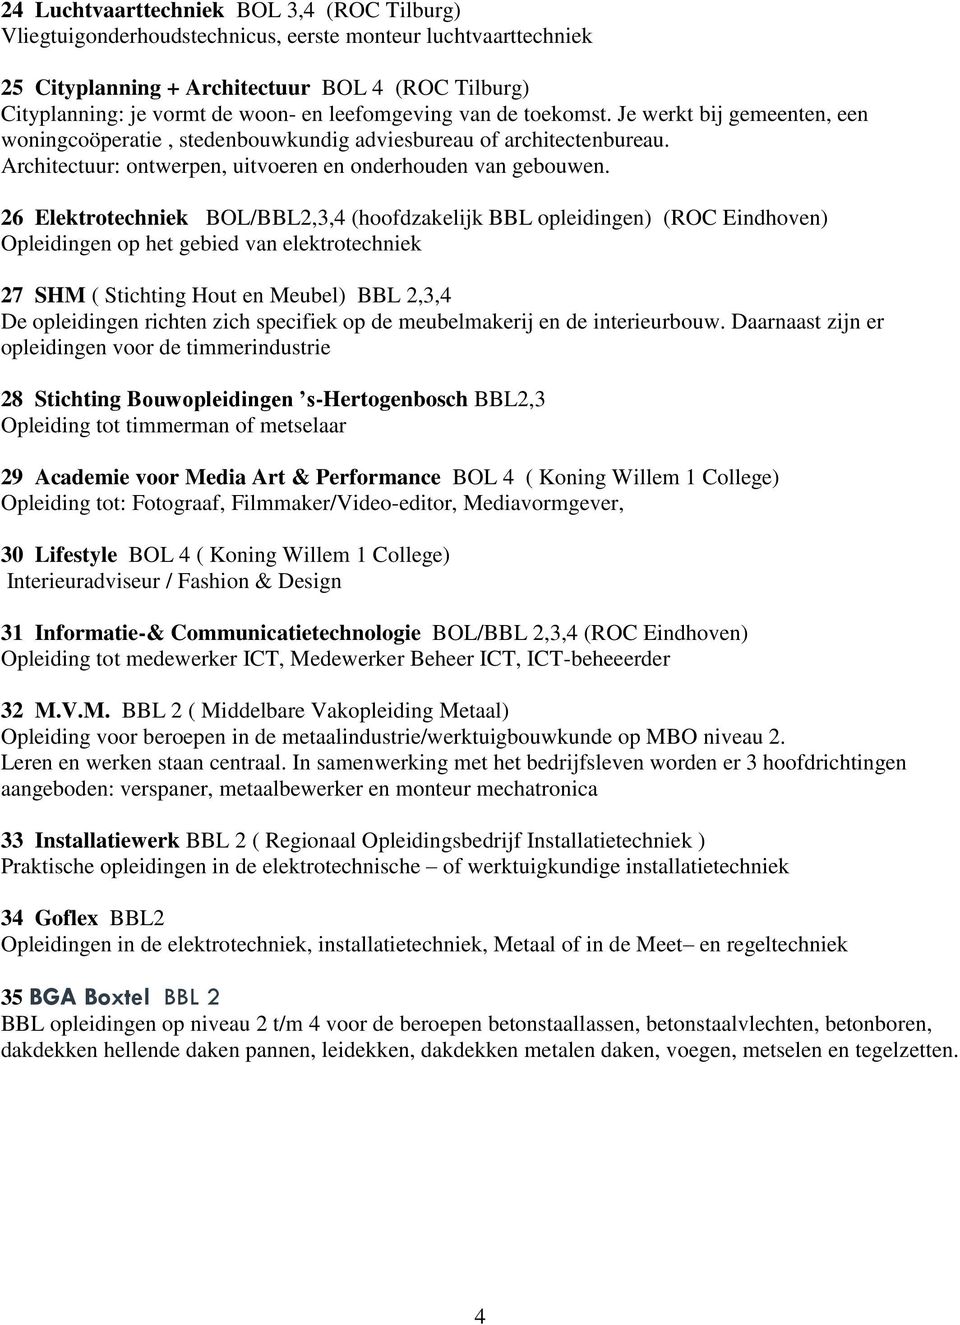 26 Elektrotechniek BOL/BBL2,3,4 (hoofdzakelijk BBL opleidingen) (ROC Eindhoven) Opleidingen op het gebied van elektrotechniek 27 SHM ( Stichting Hout en Meubel) BBL 2,3,4 De opleidingen richten zich